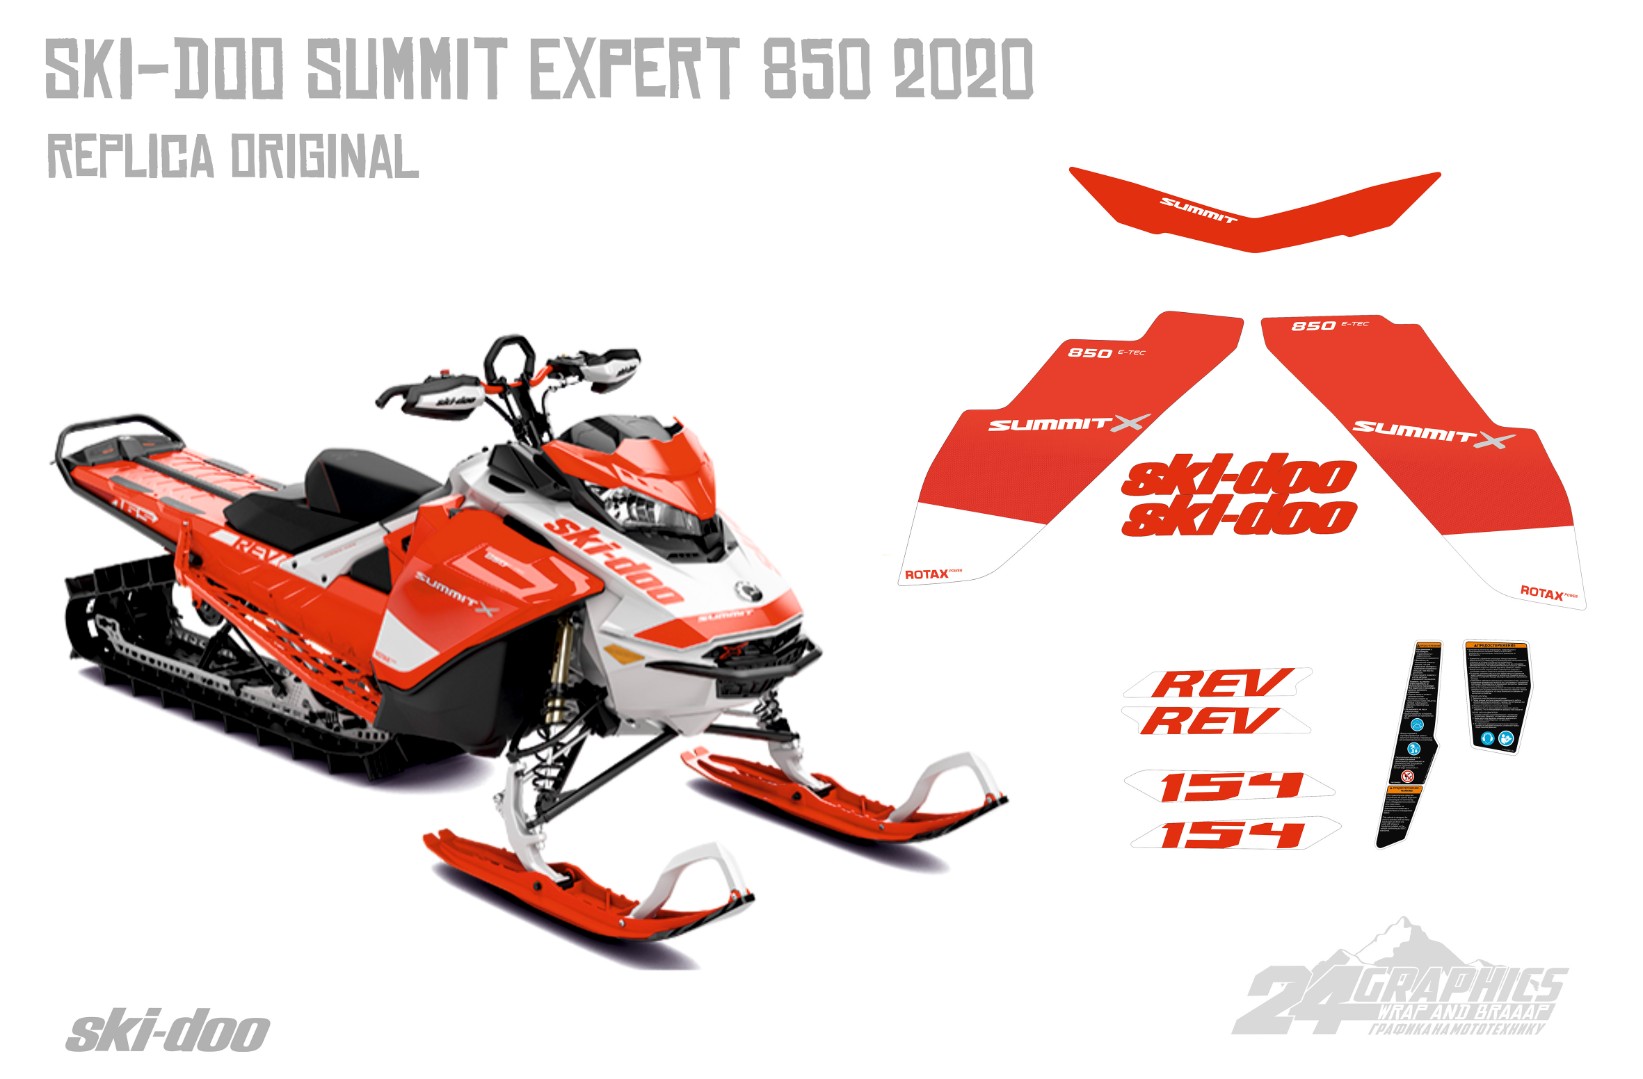 Реплика оригинальных наклеек Ski-doo Summit Expert 2020